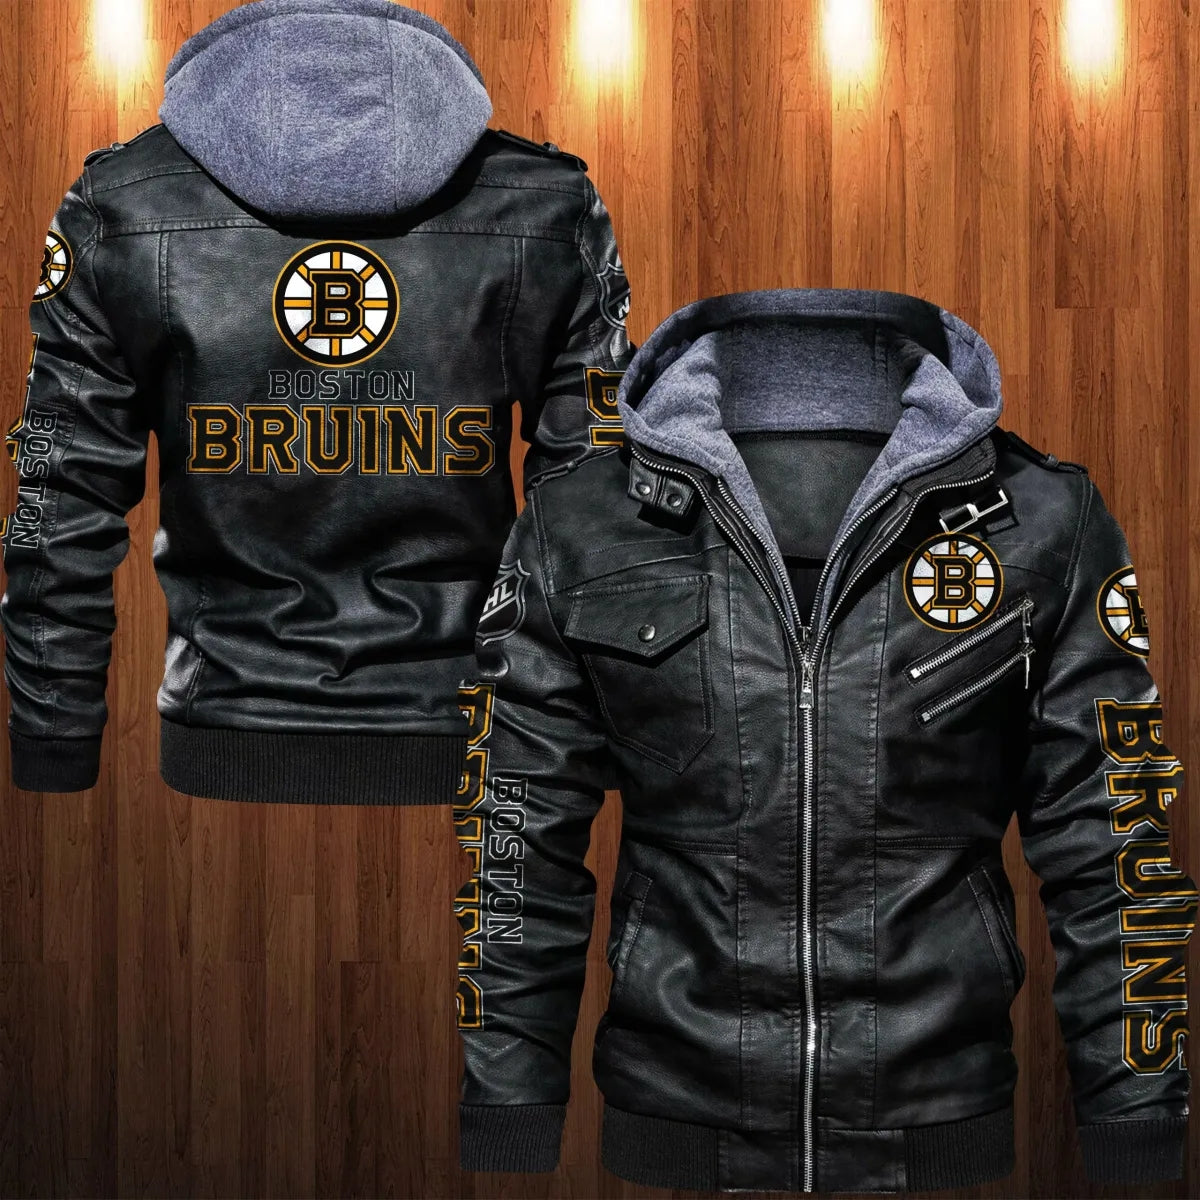 Boston Bruins NHL Fan Jackets for sale